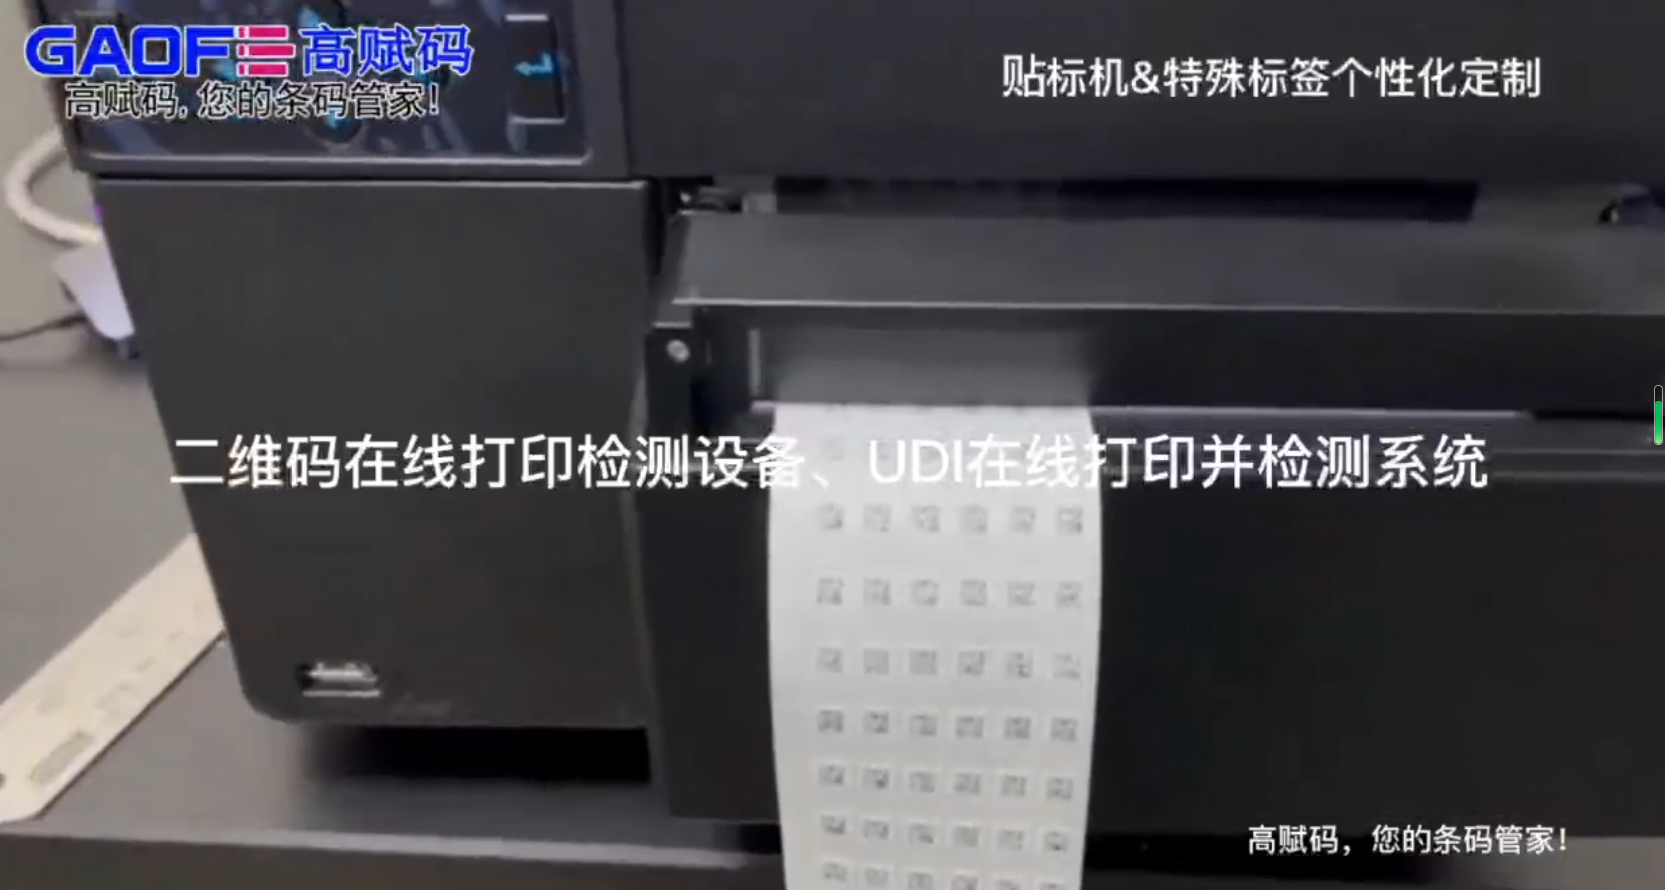 高賦碼二維碼在線打印檢測設備、UDI在線打印并檢測系統